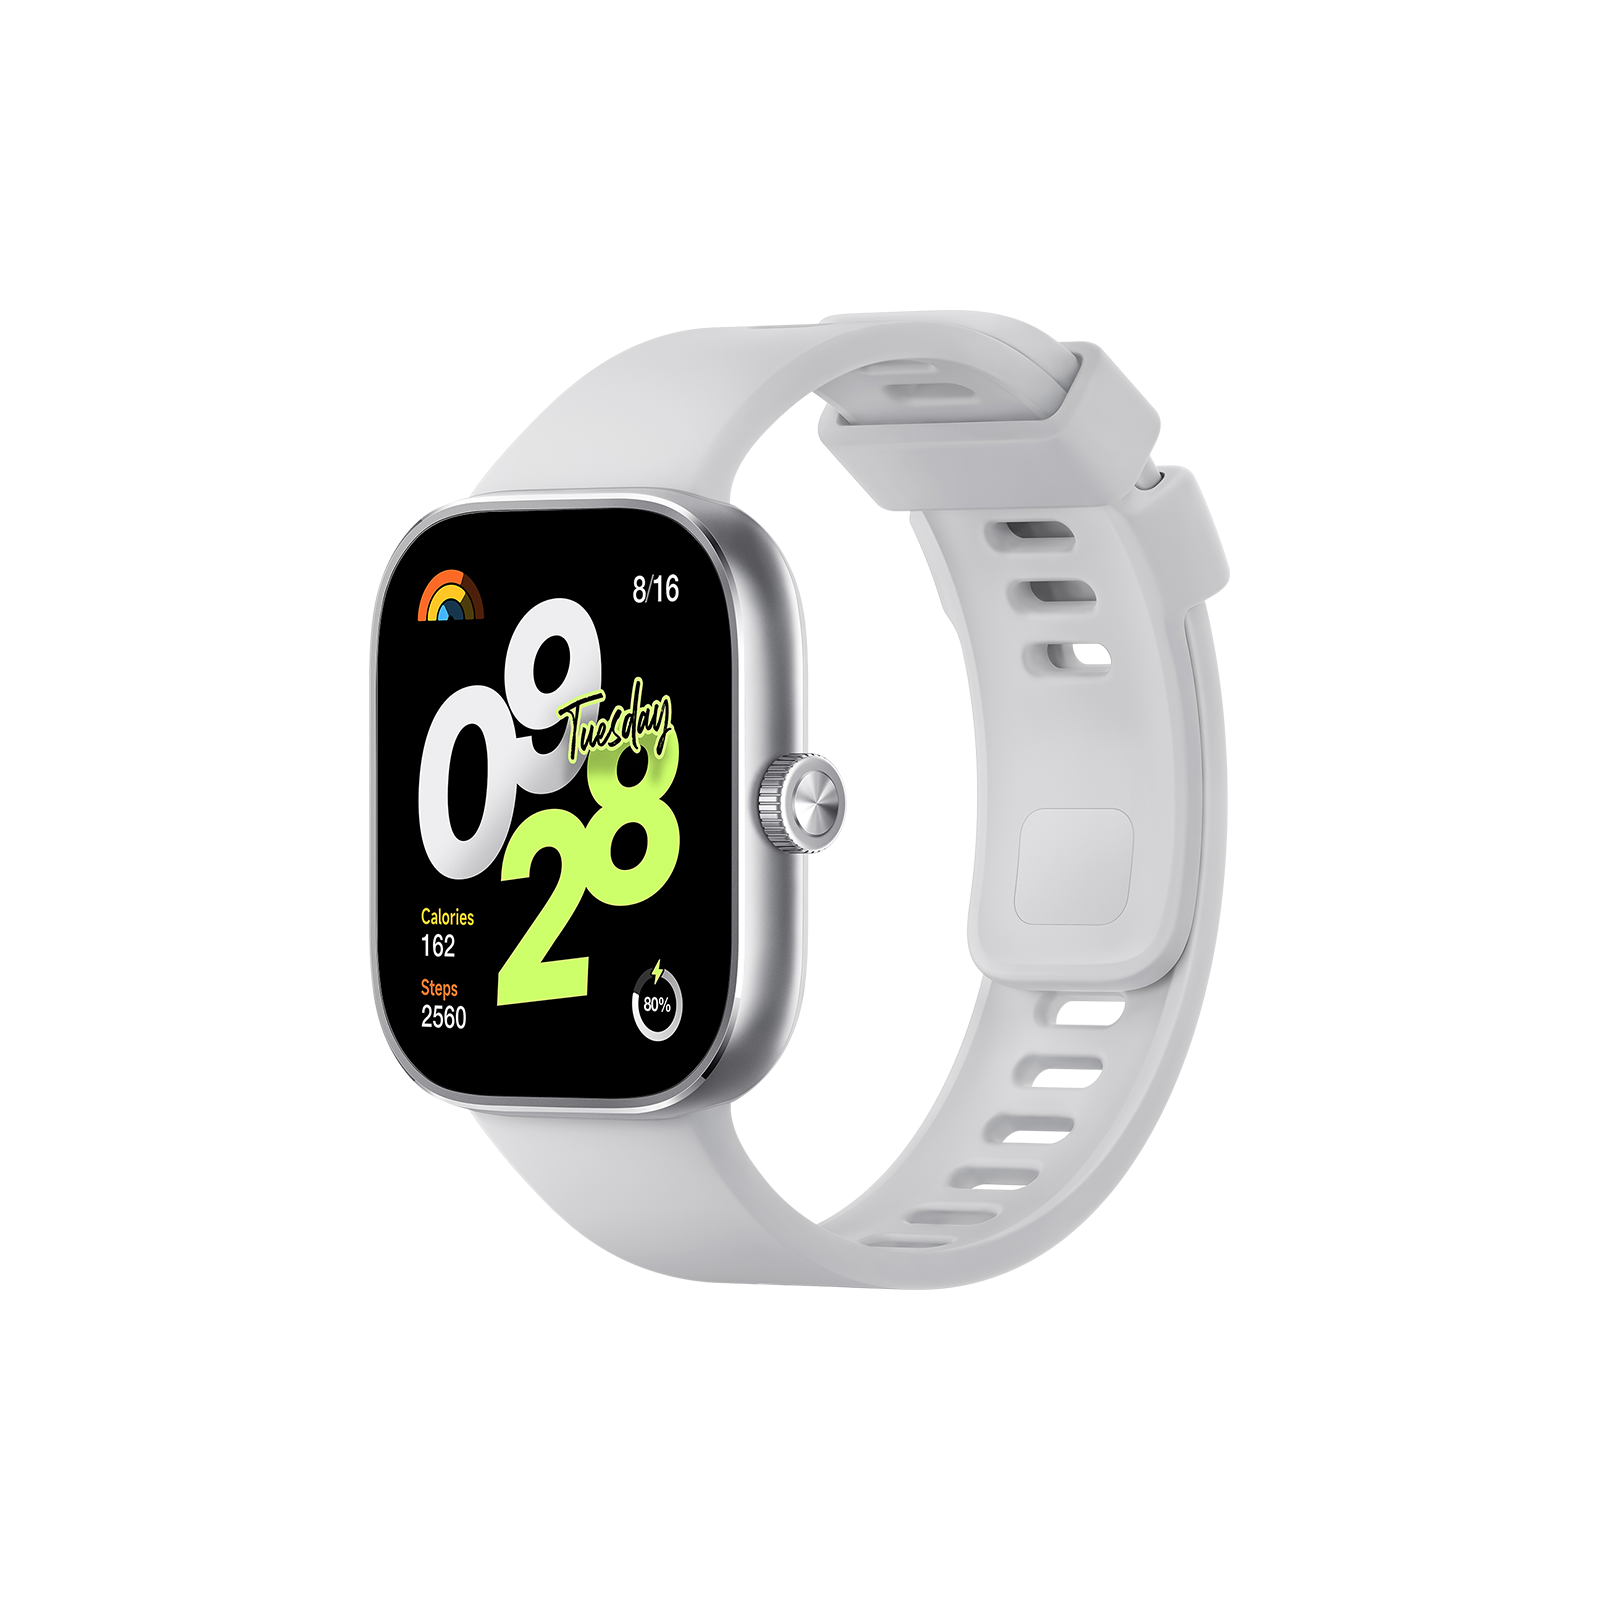 Smartwatch Reloj Inteligente Hombre Mujer Android Ios E Band Premium  Relojes Unisex Diseño De La Malla